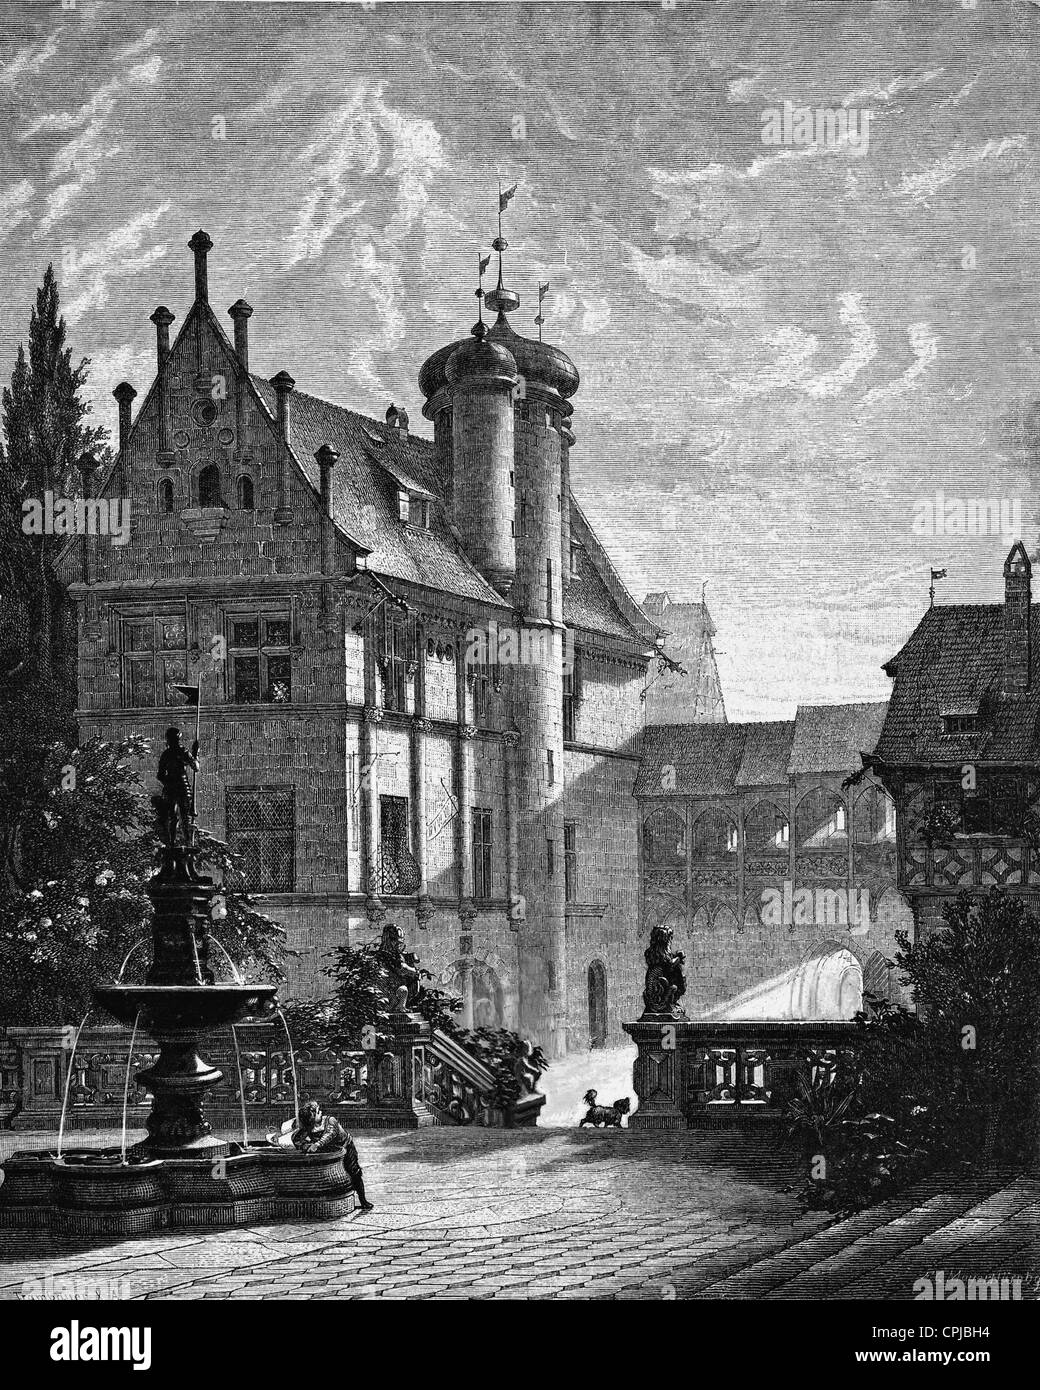 Tucher small castle in Nuremberg Stock Photo